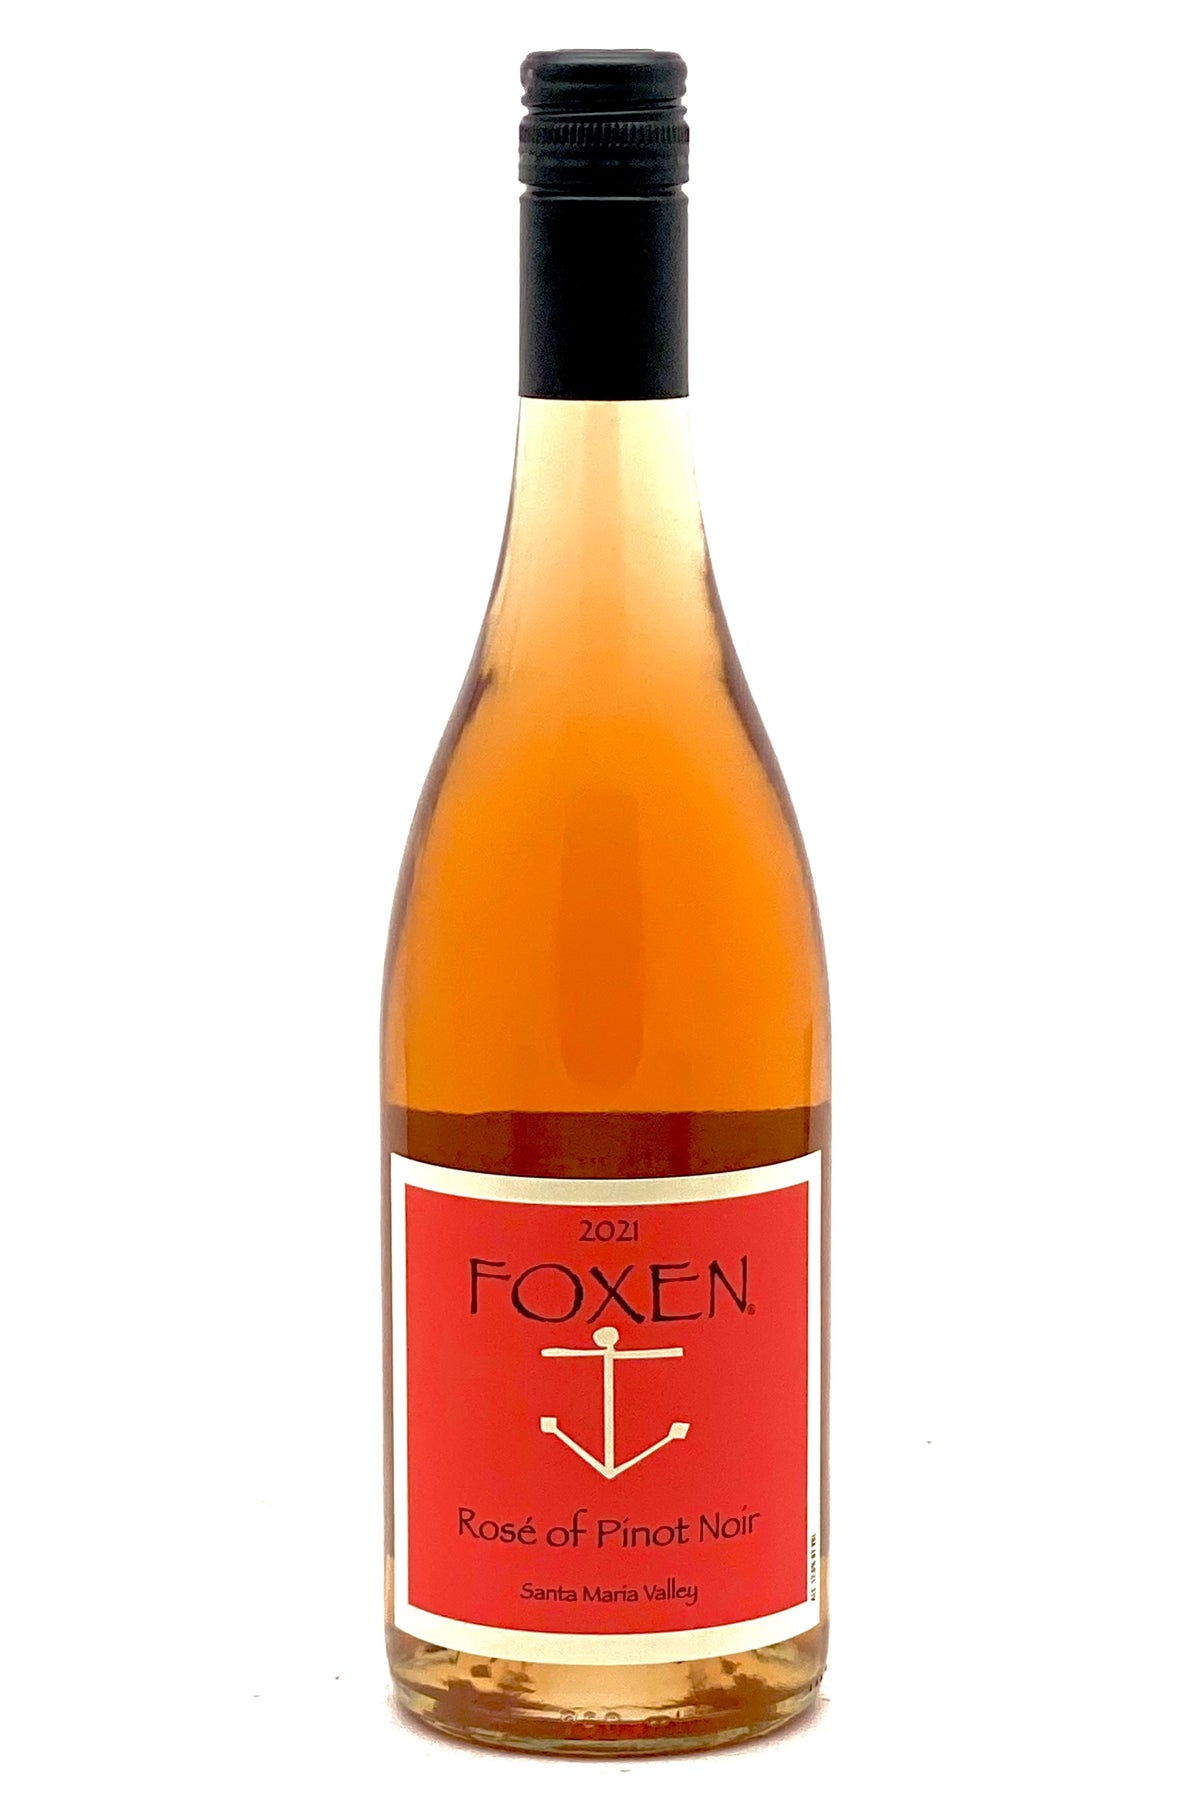 Foxen 2021 Rosé of Pinot Noir